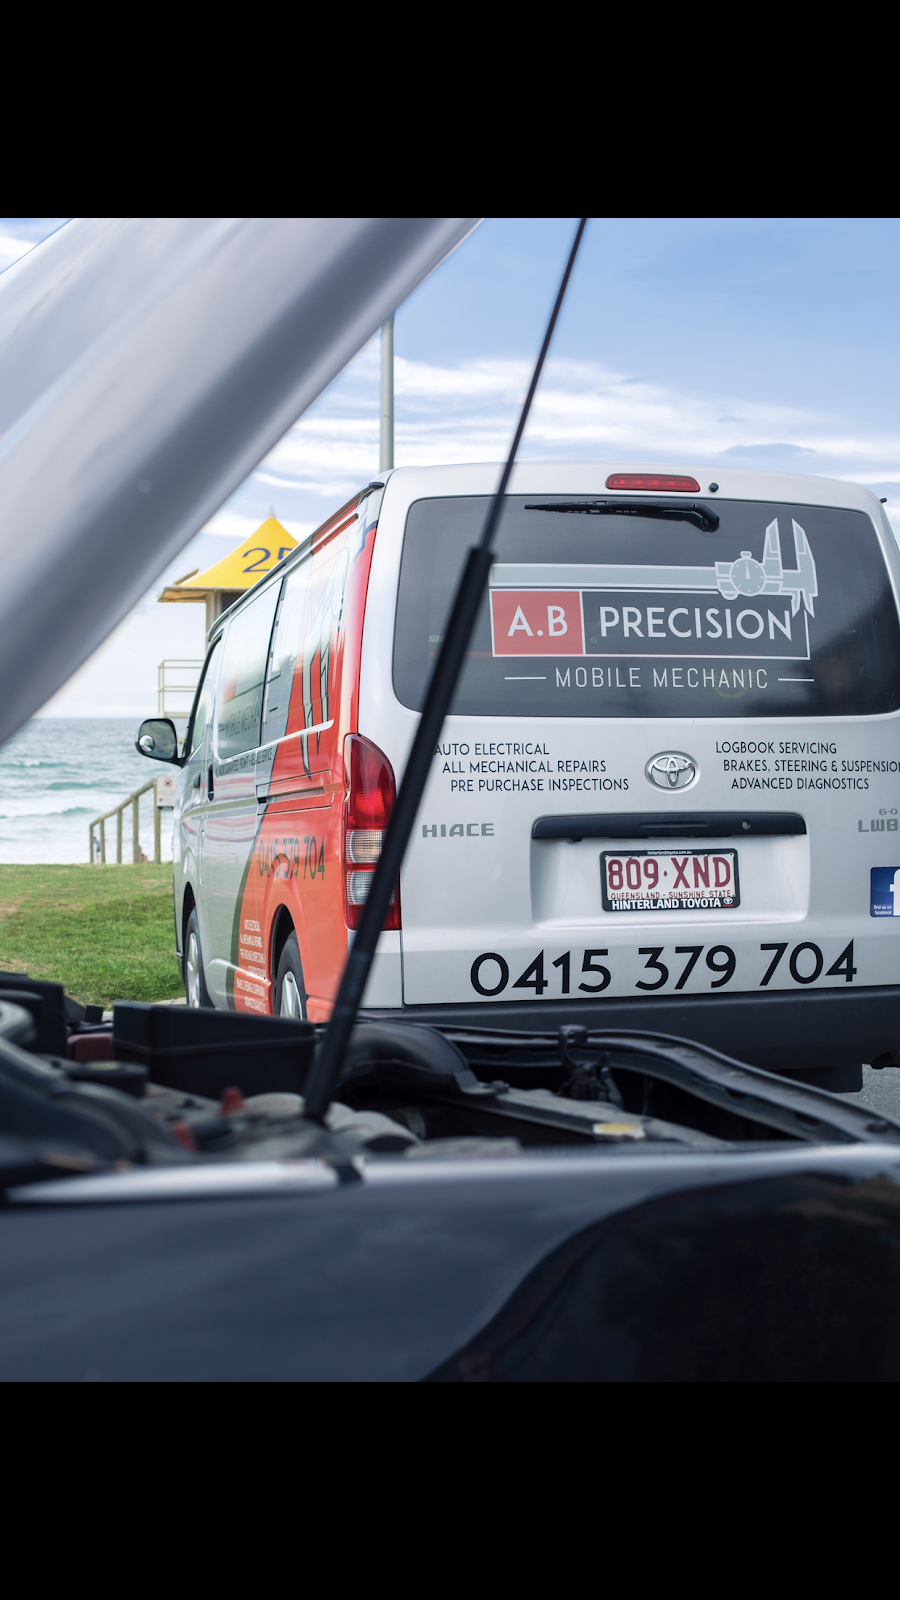 A.B Precision Mobile Mechanical | car repair | 1 Foxwell Rd, Coomera QLD 4209, Australia | 0415379704 OR +61 415 379 704